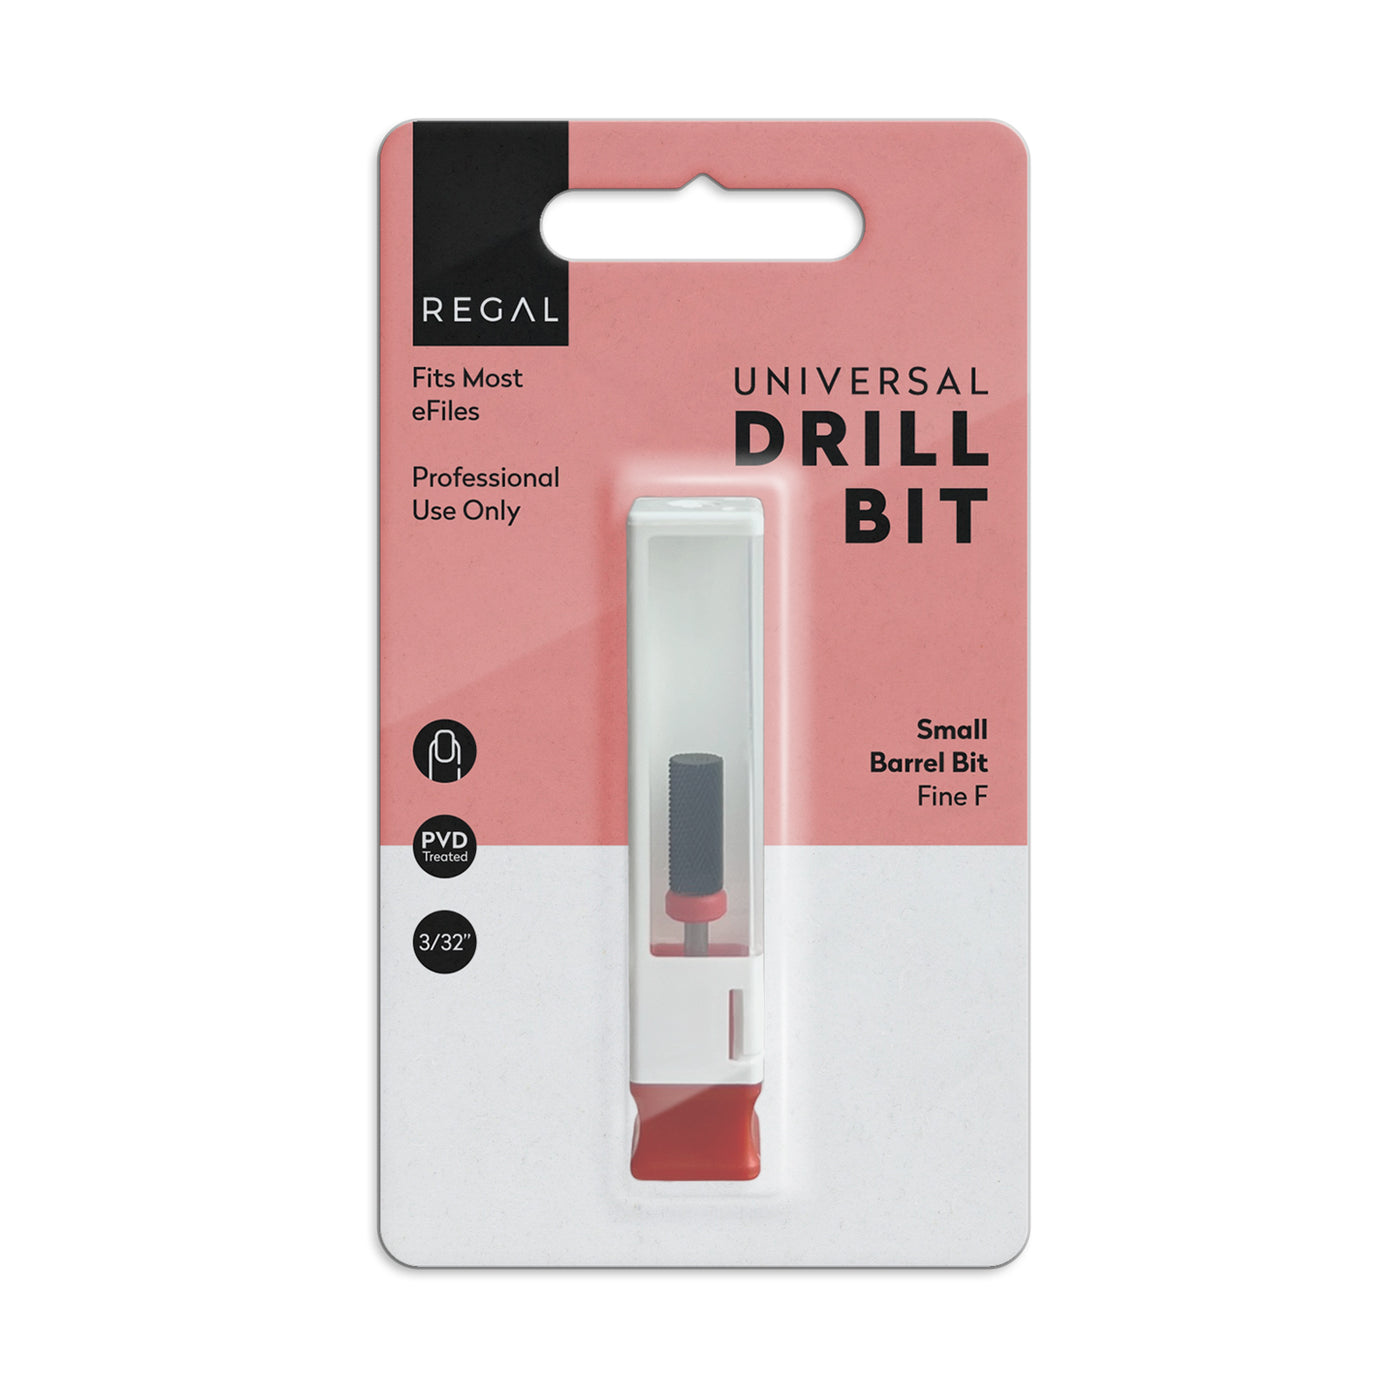 Regal by Anh E-File Drill Bit - Small Barrel Bit - Fine F